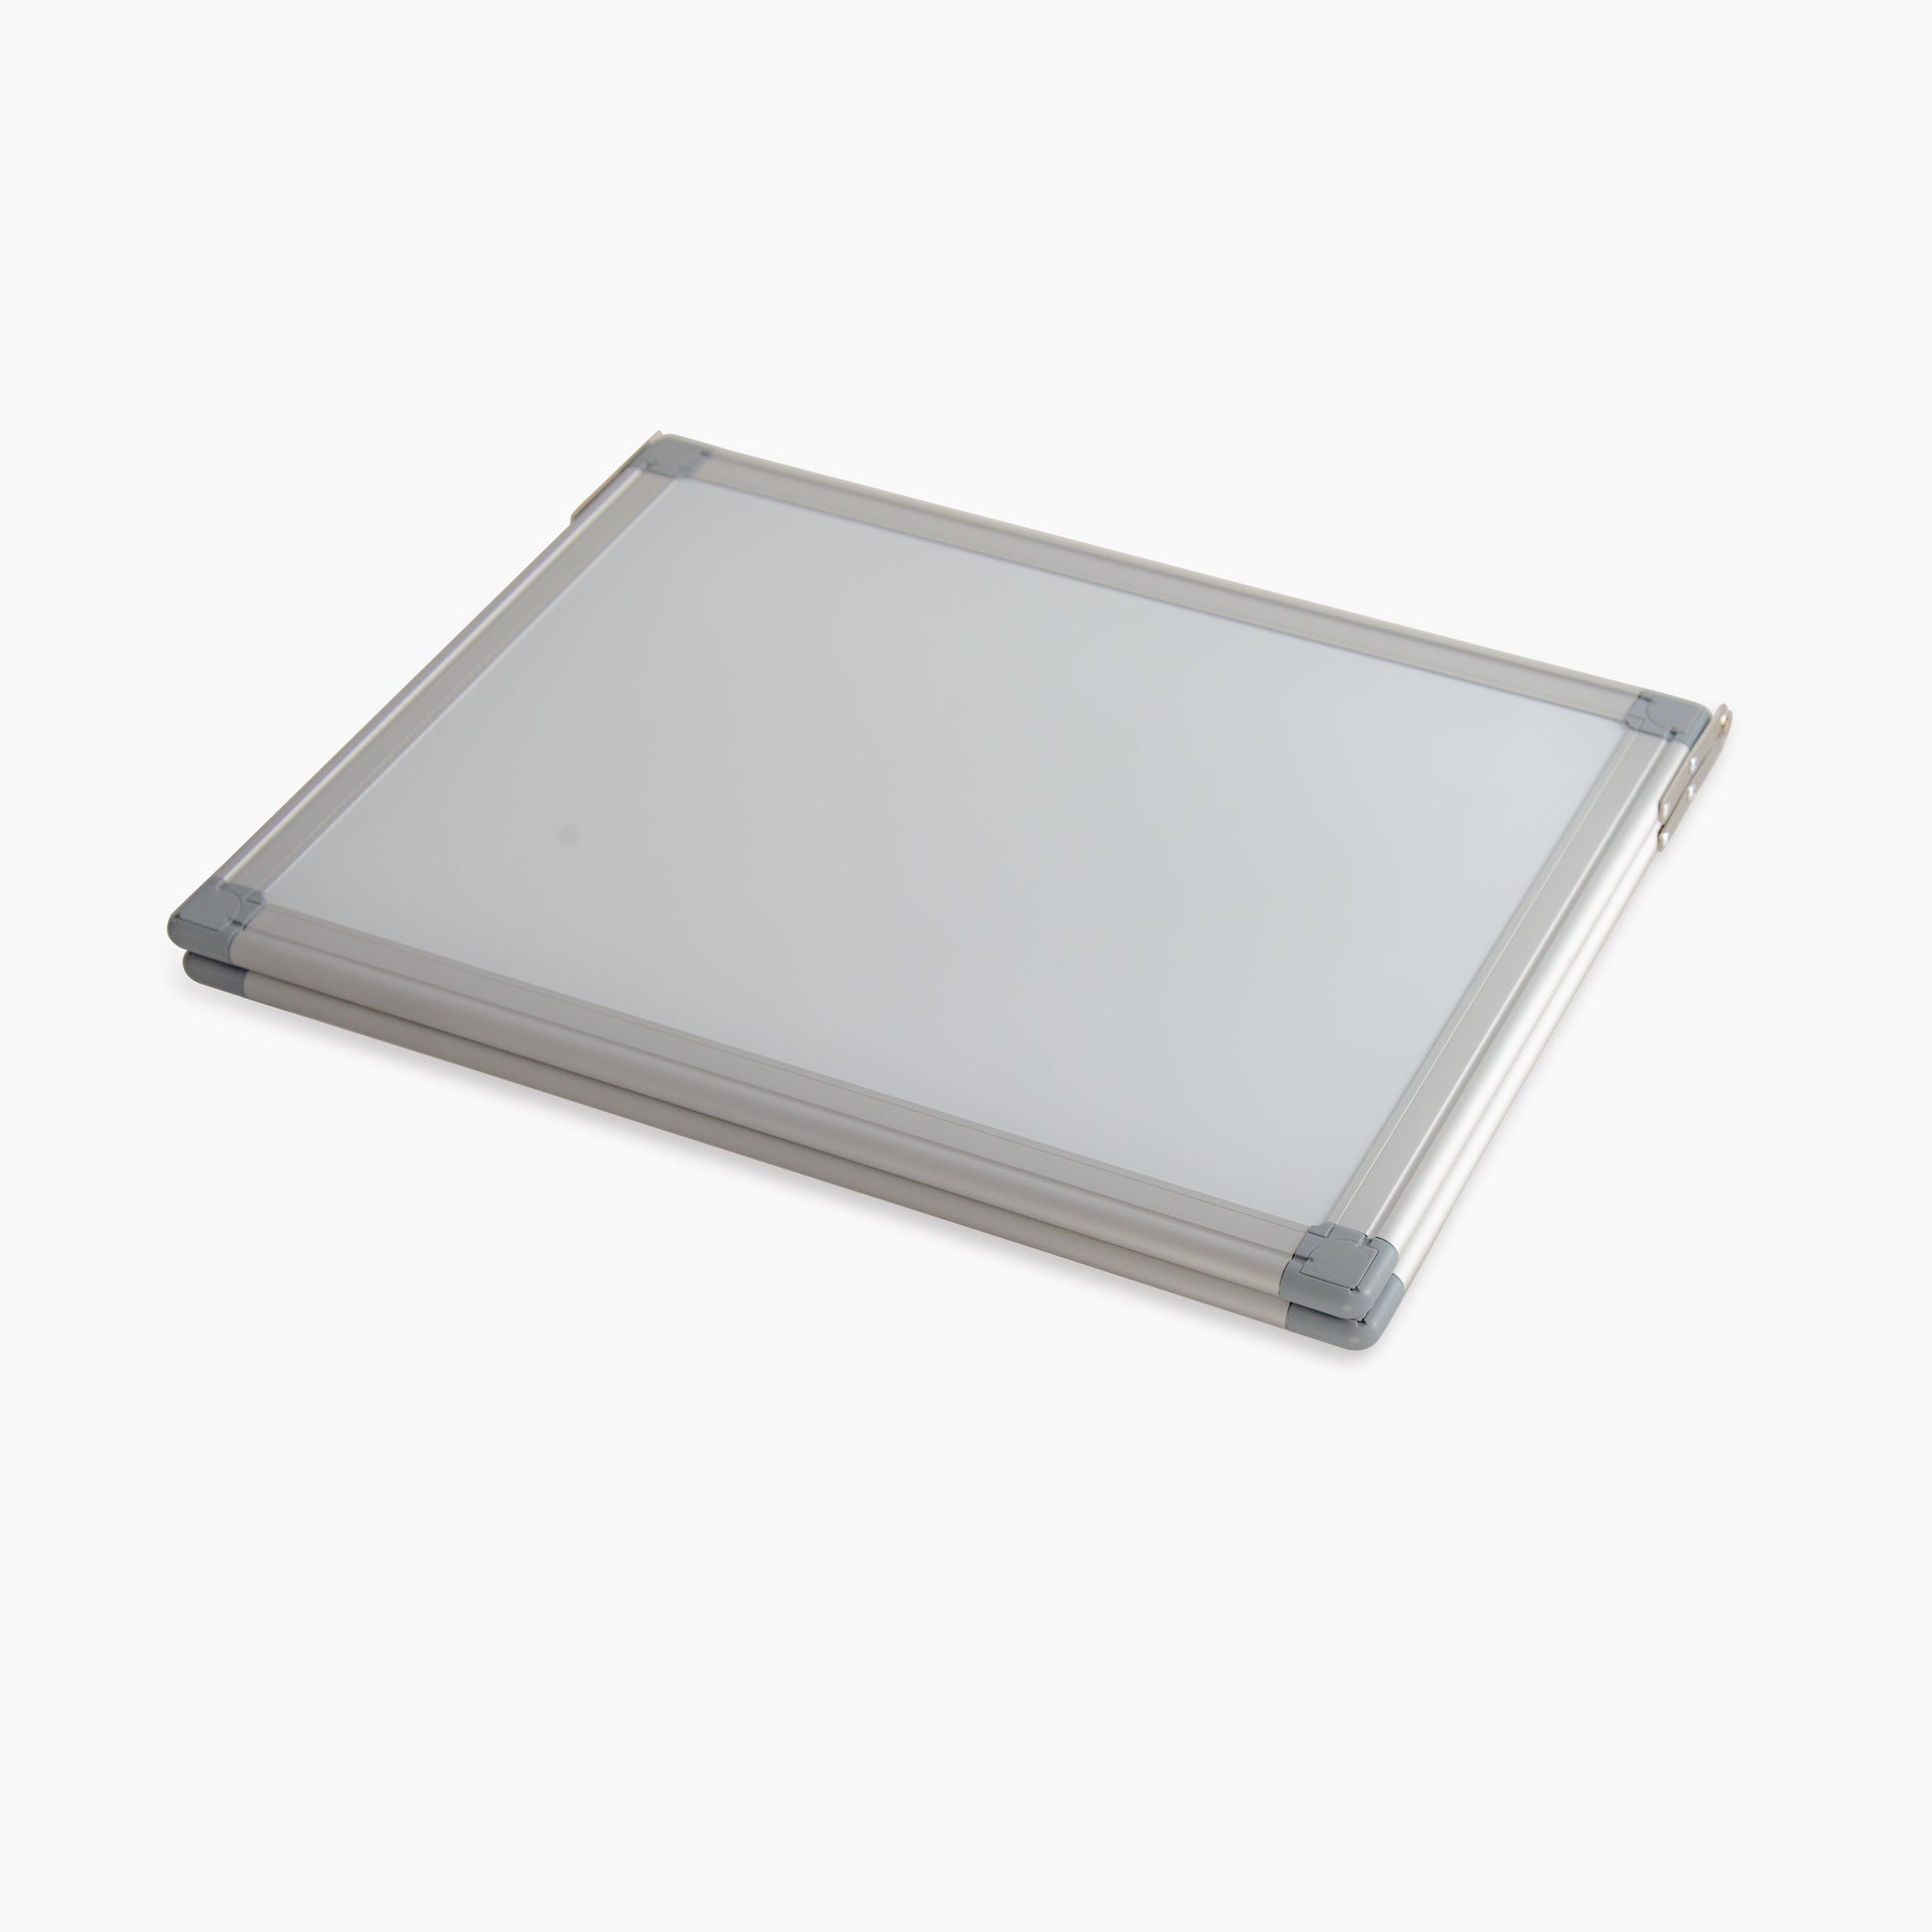 M29 180 Degree Foldable Magnetic Whiteboard Easel Portable Aluminum Frame Desktop Memo Board - Premium magnetic whiteboard from Madic Whiteboard - Madic Whiteboard